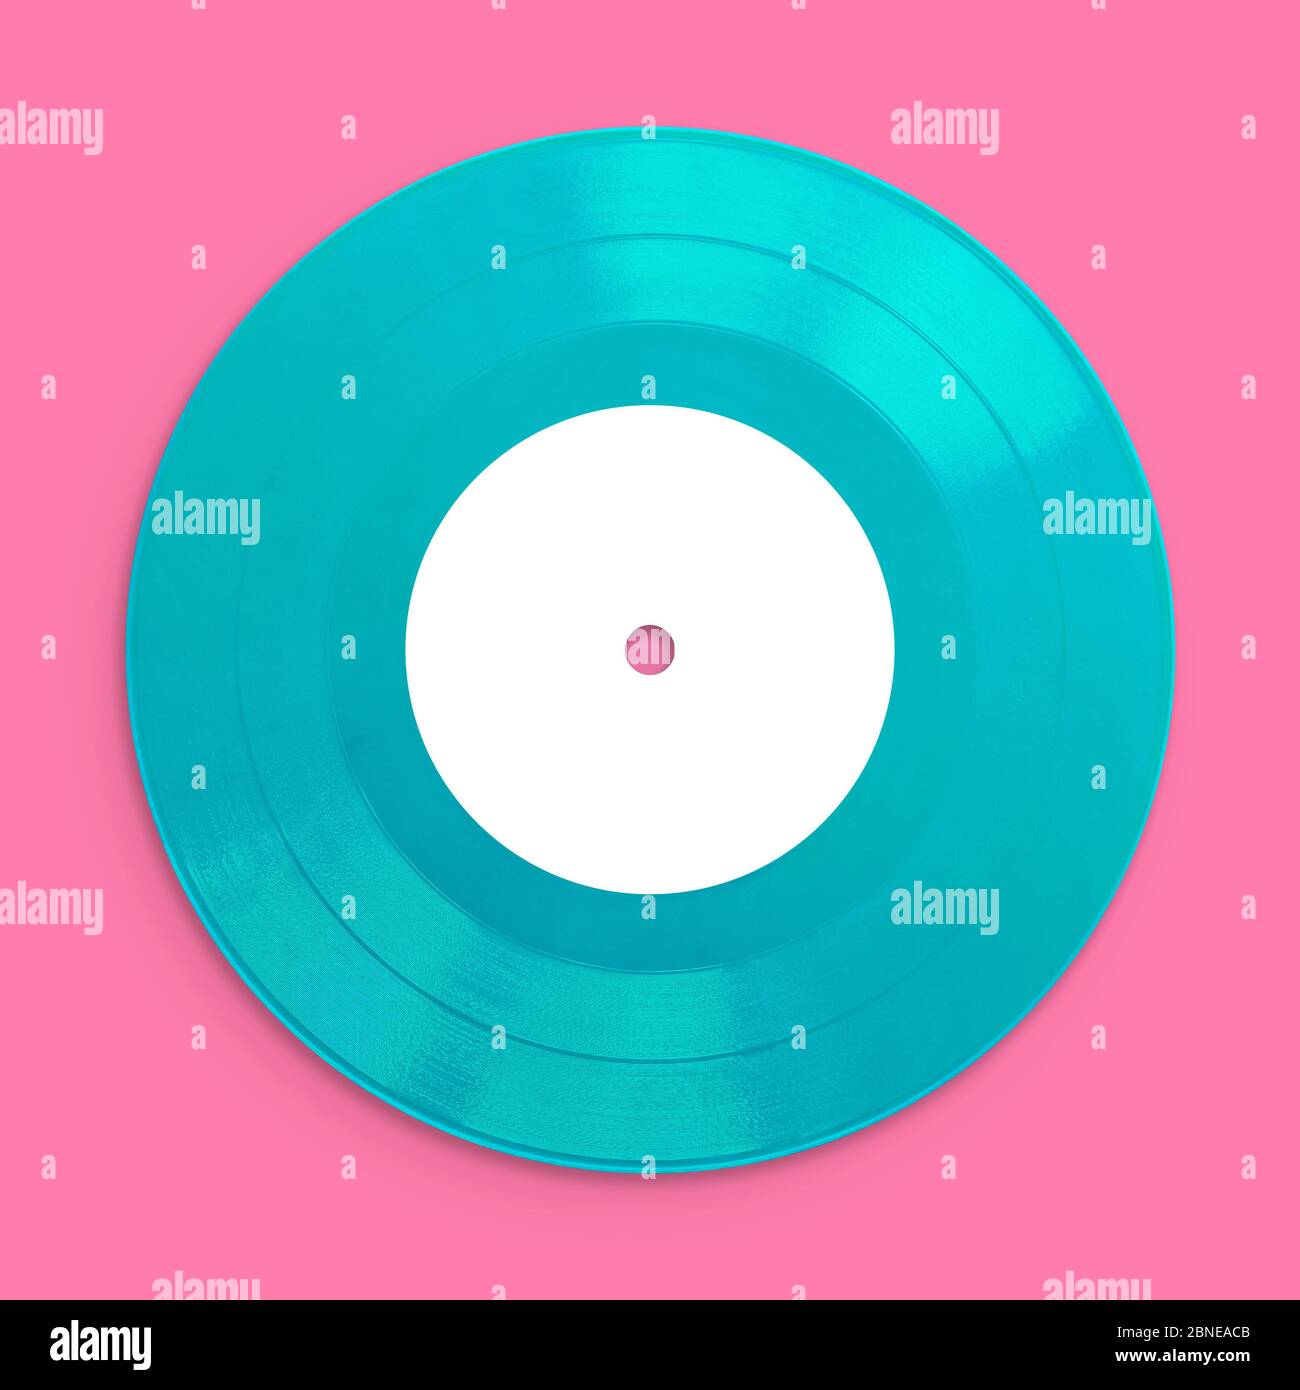 Vinyle Record Music, gros plan, vide pour la personnalisation de l'étiquette, isolé et présenté dans des couleurs pastel, pour un design rétro nostalgique de la création Banque D'Images